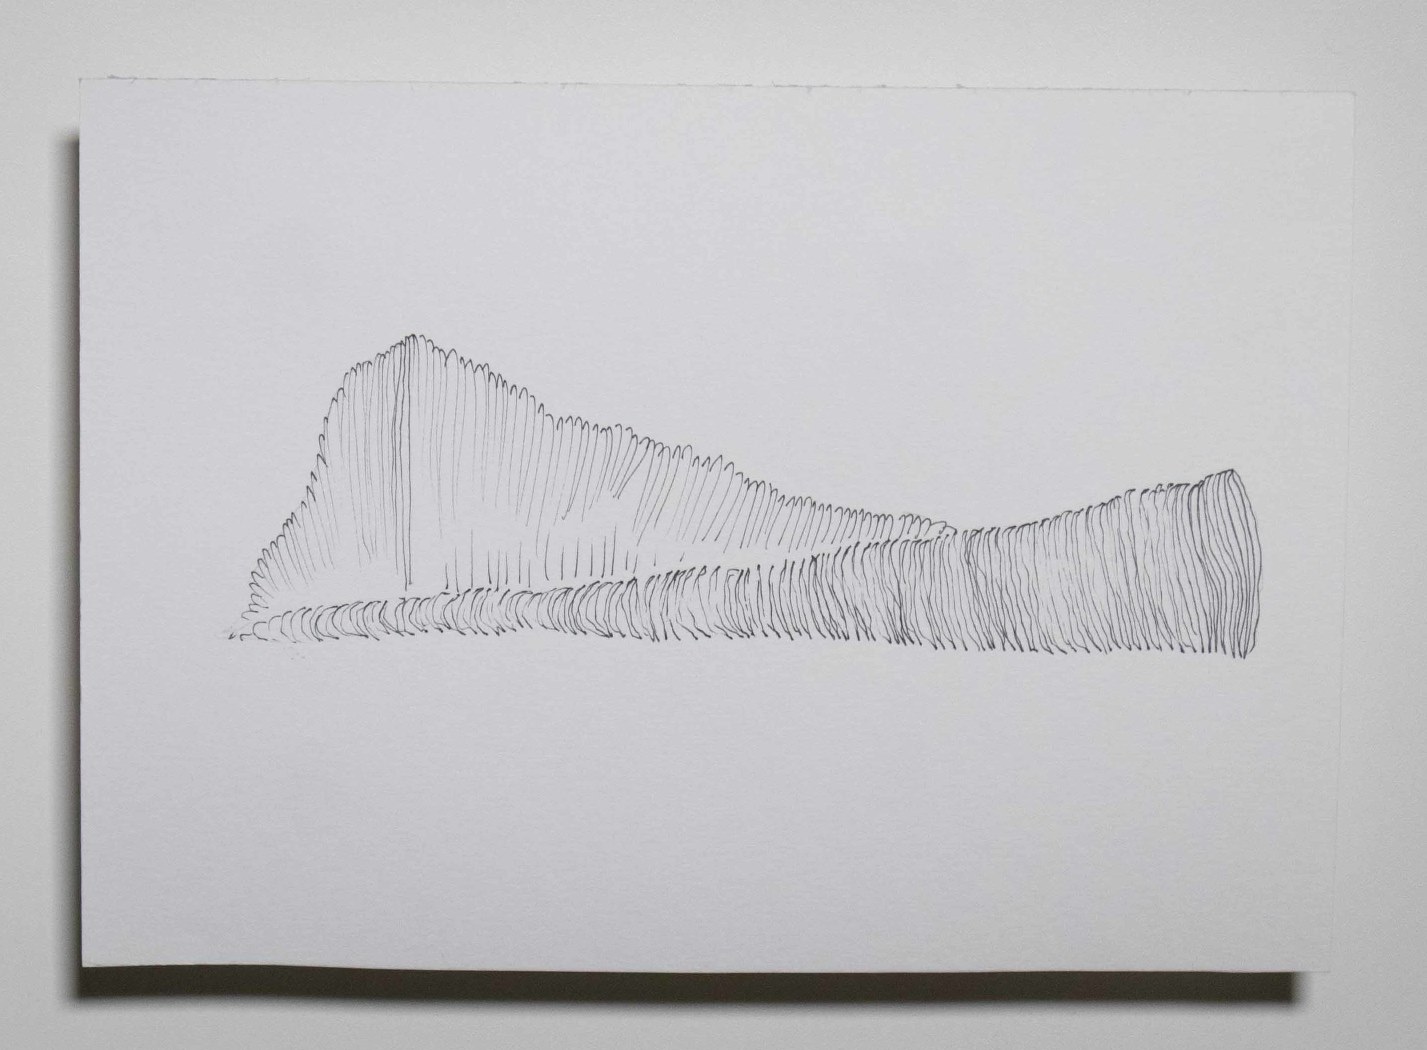 Série Catálogo de paisagens da janela do meu quarto, Anna Moraes, 2020. Desenho, caneta sobre papel 300g, 20x15cm. 